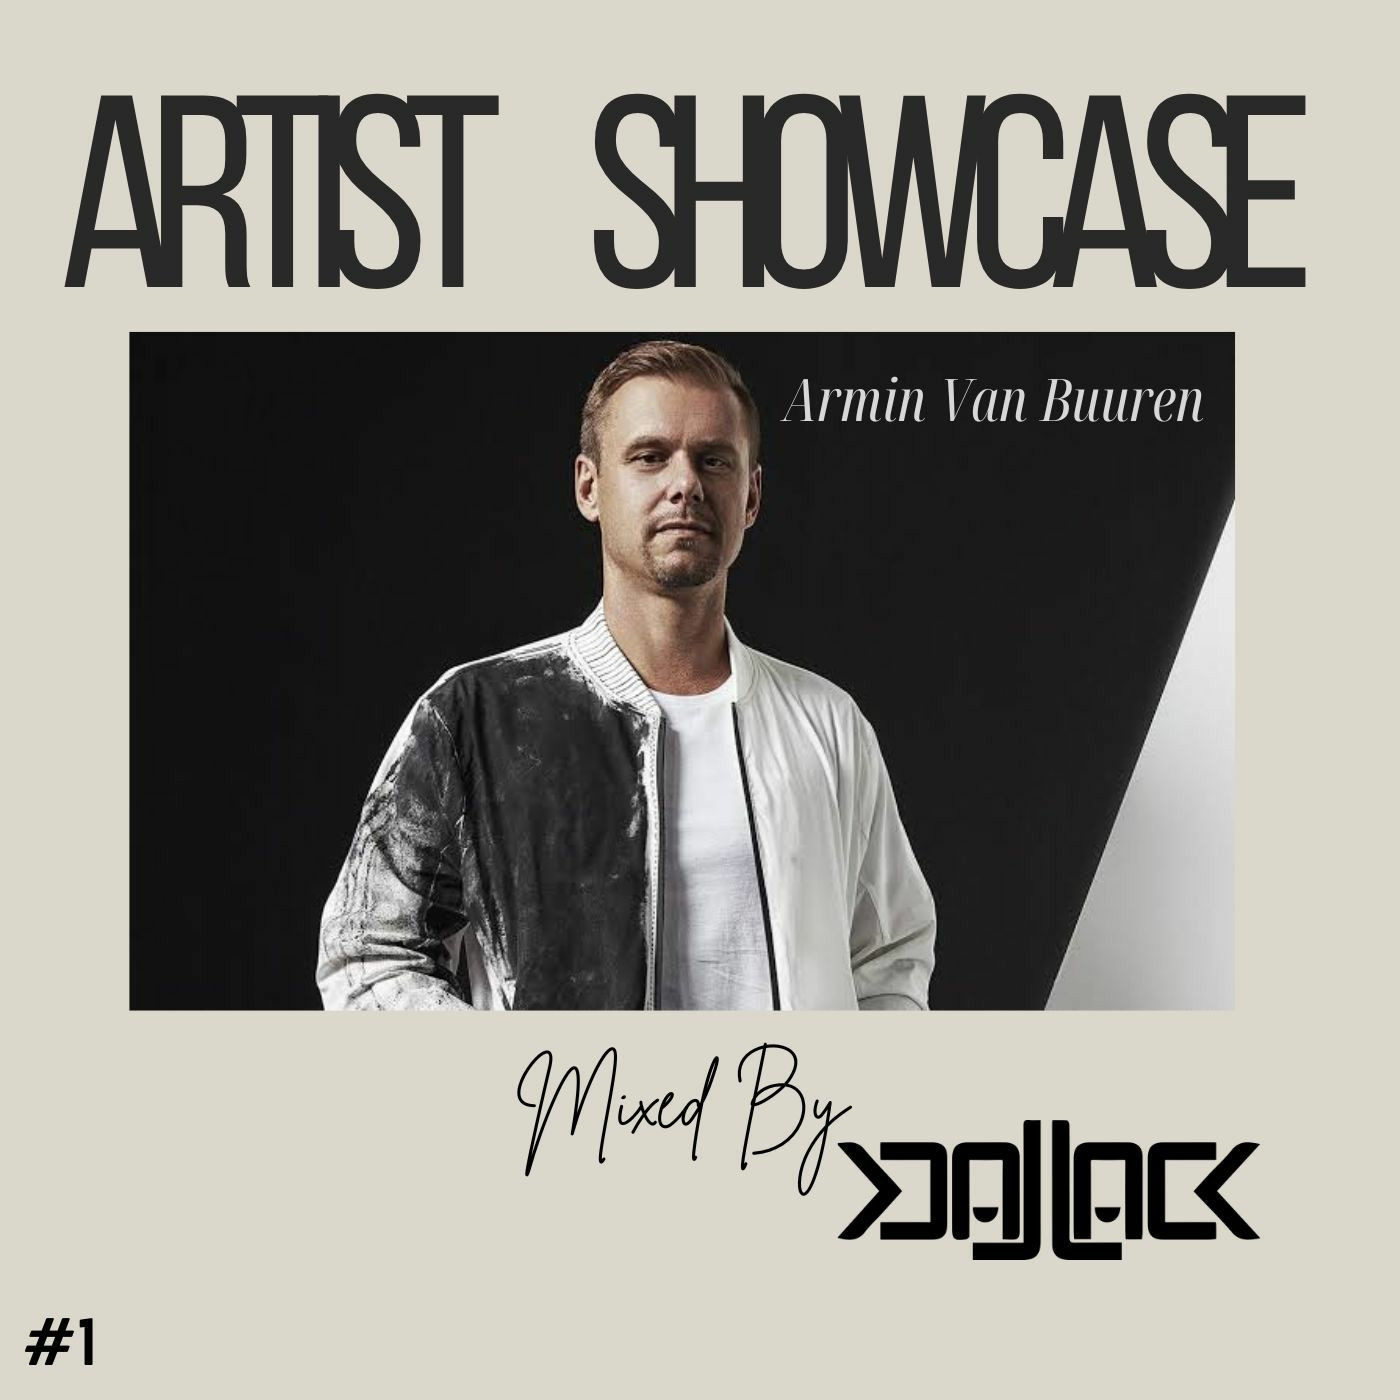 Artist Showcase #1 - Armin Van Buuren | Part 2